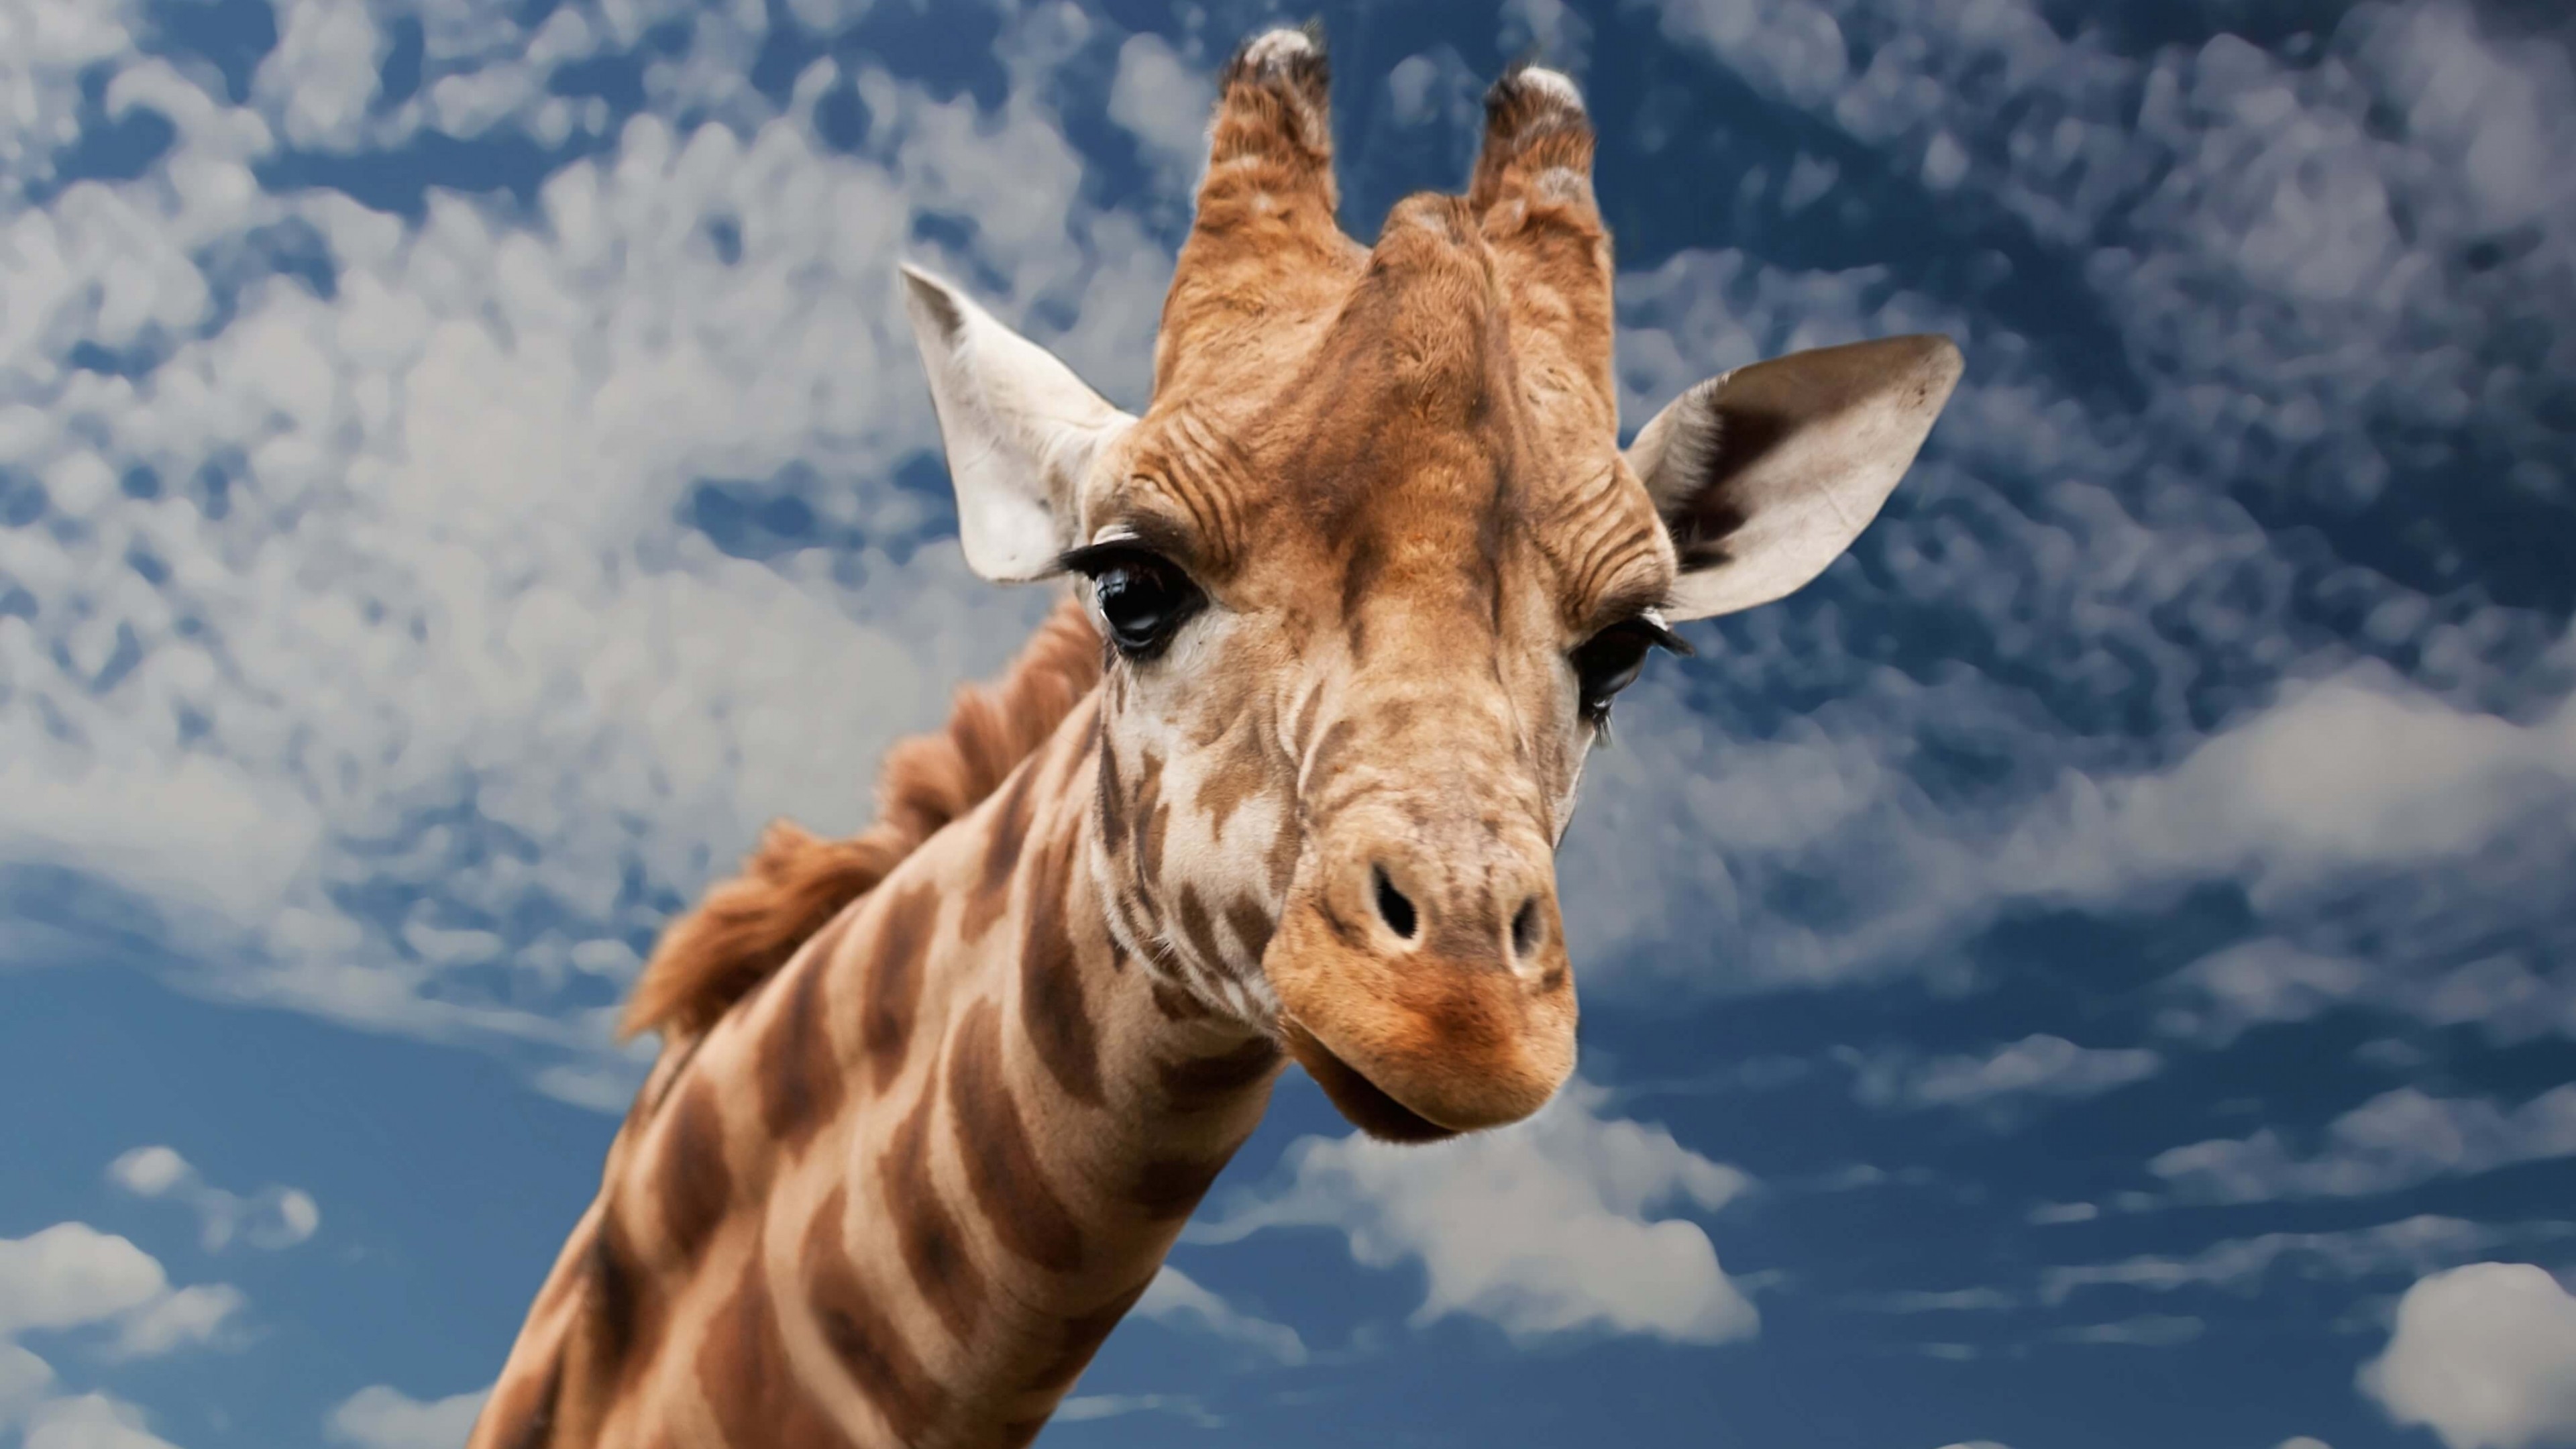 长颈鹿伸出舌头 免费图片 - Public Domain Pictures